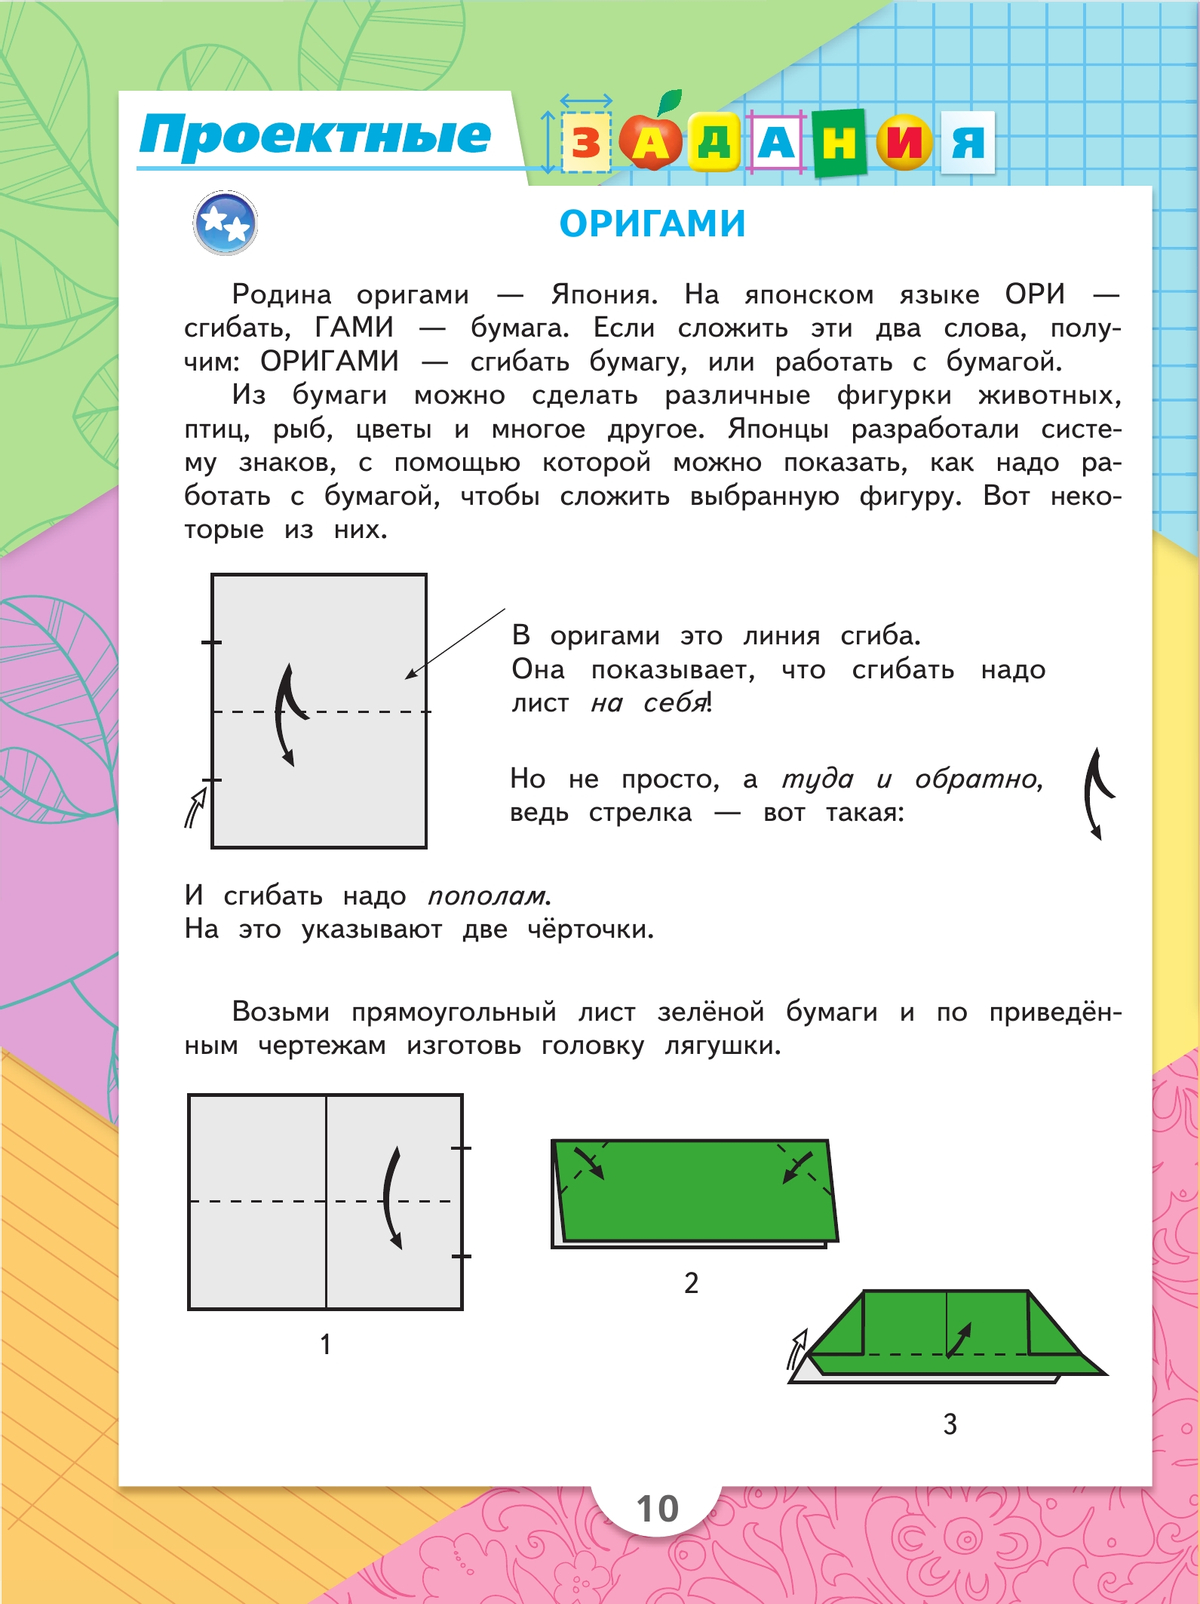 Проект «Оригами и математика»